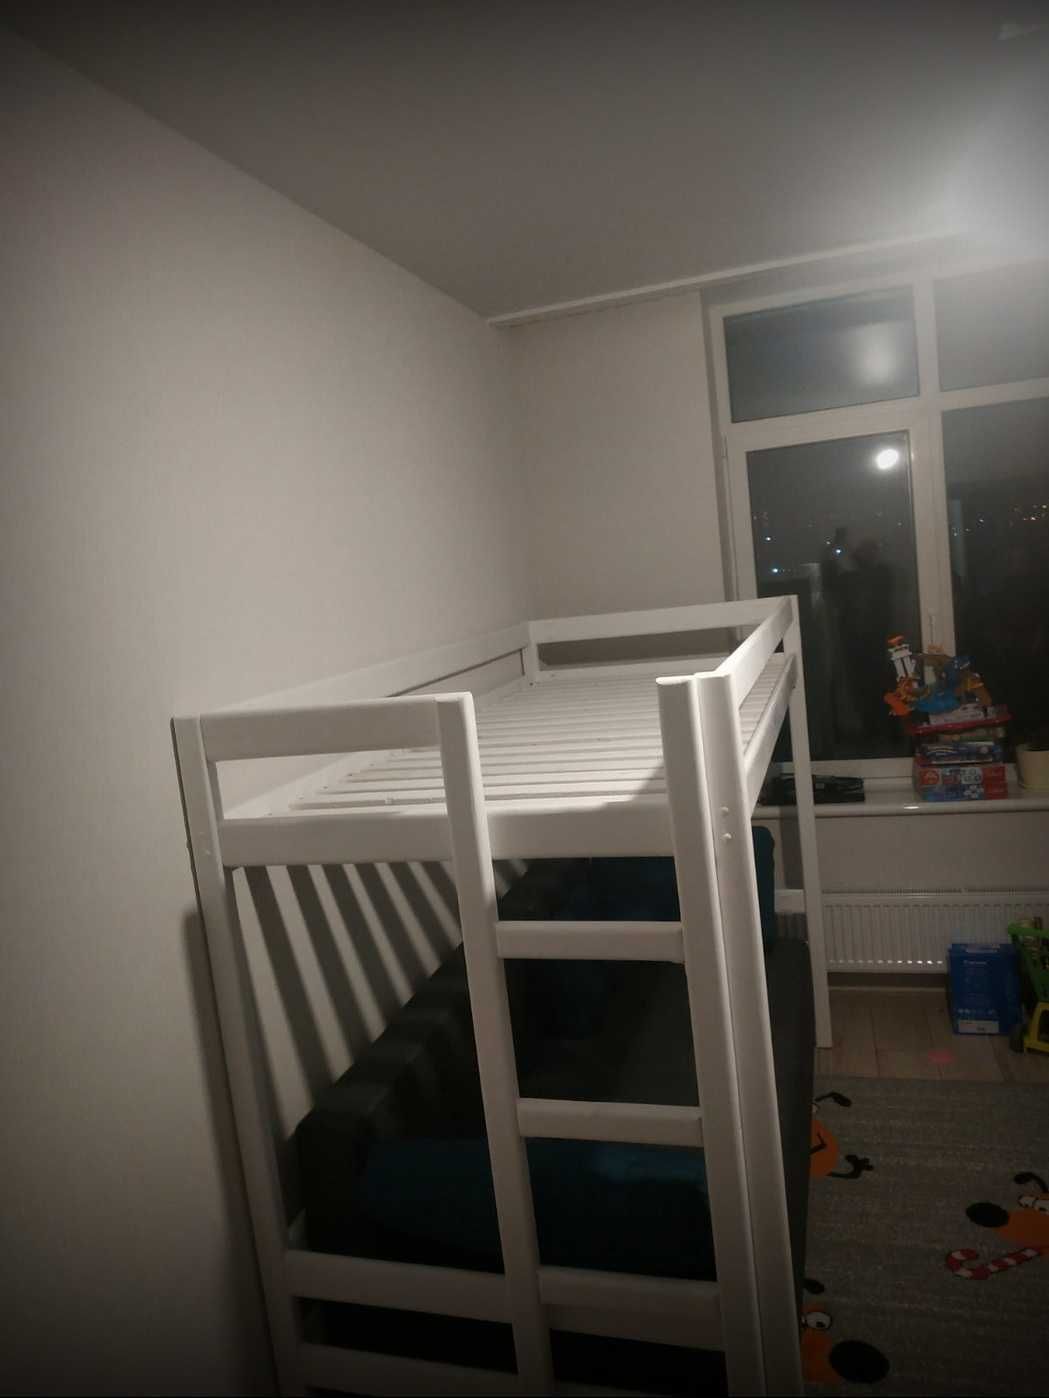 Ліжко дитяче чердак Лілія для дітей. Черный цвет. Детская кровать